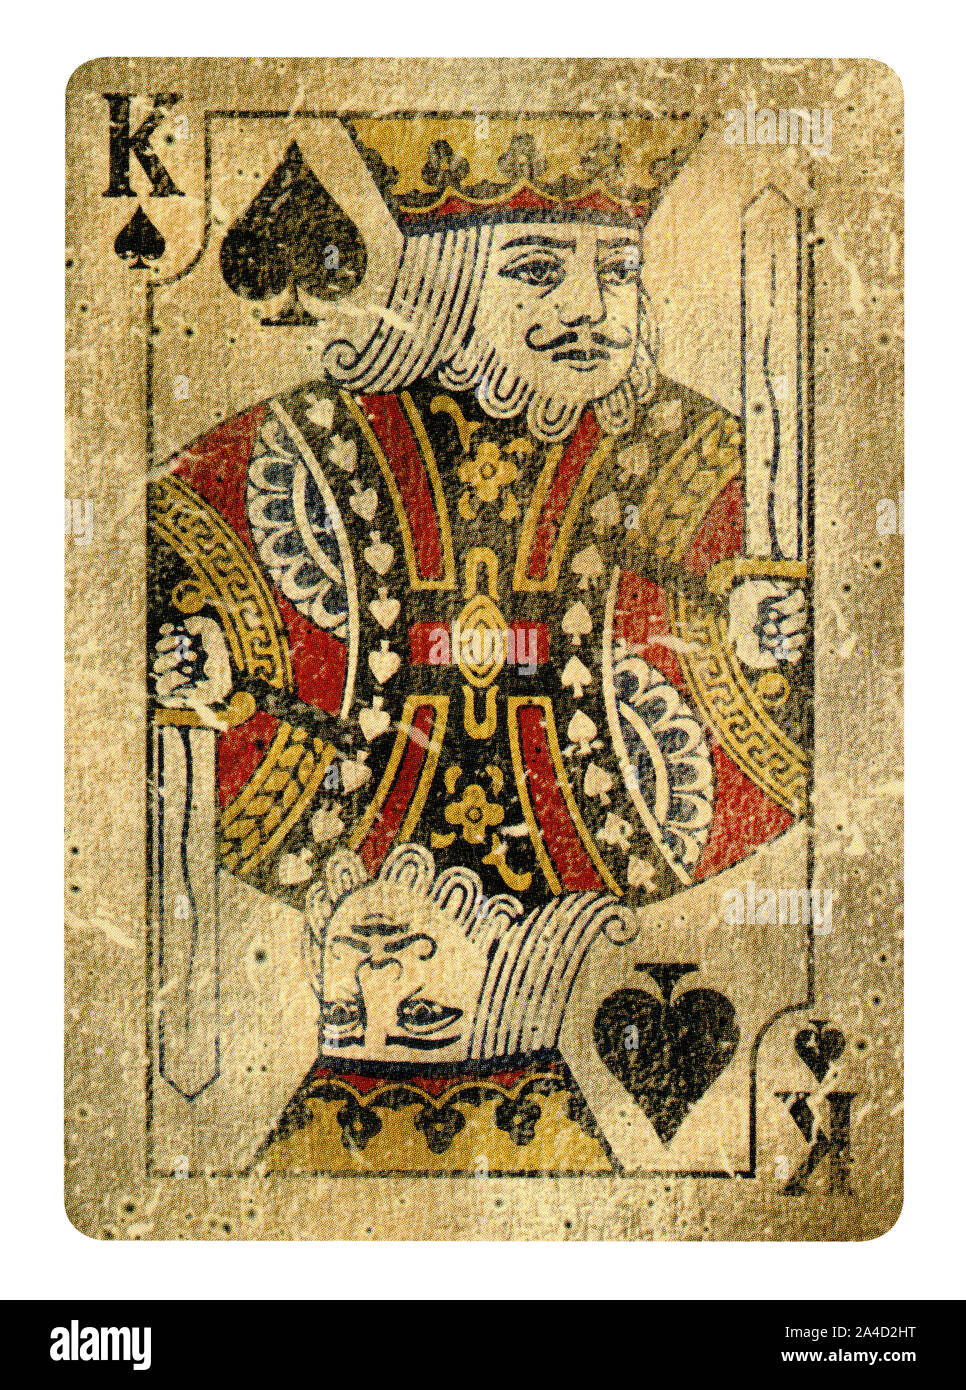 Le Roi de pique jeu de carte - isolated on white Banque D'Images